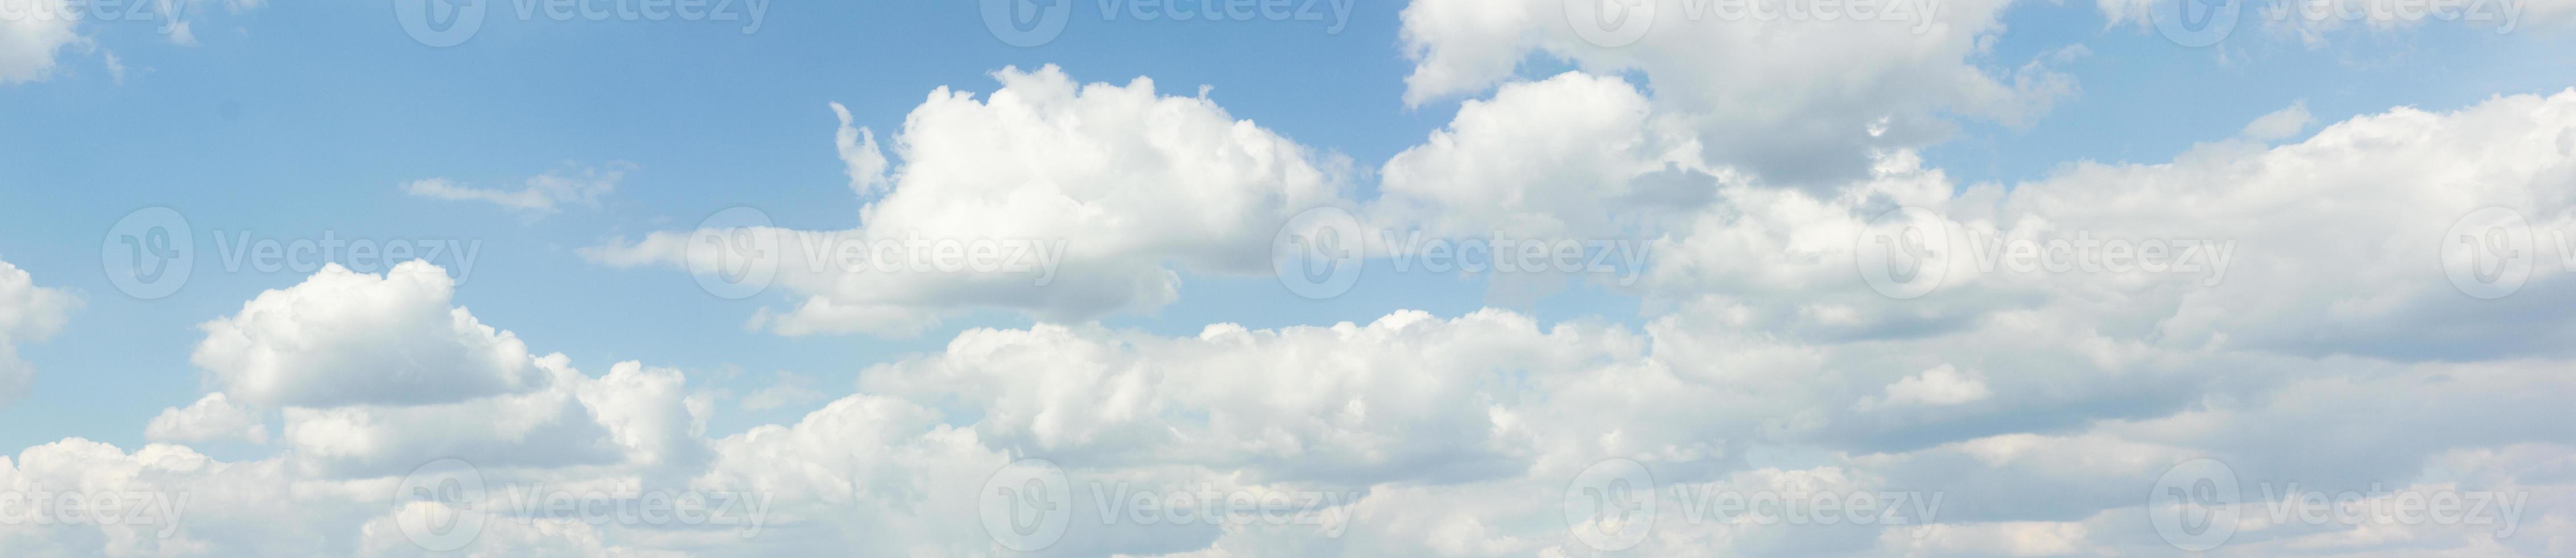 panorama de nuvens. banner contra um céu azul com nuvens. foto